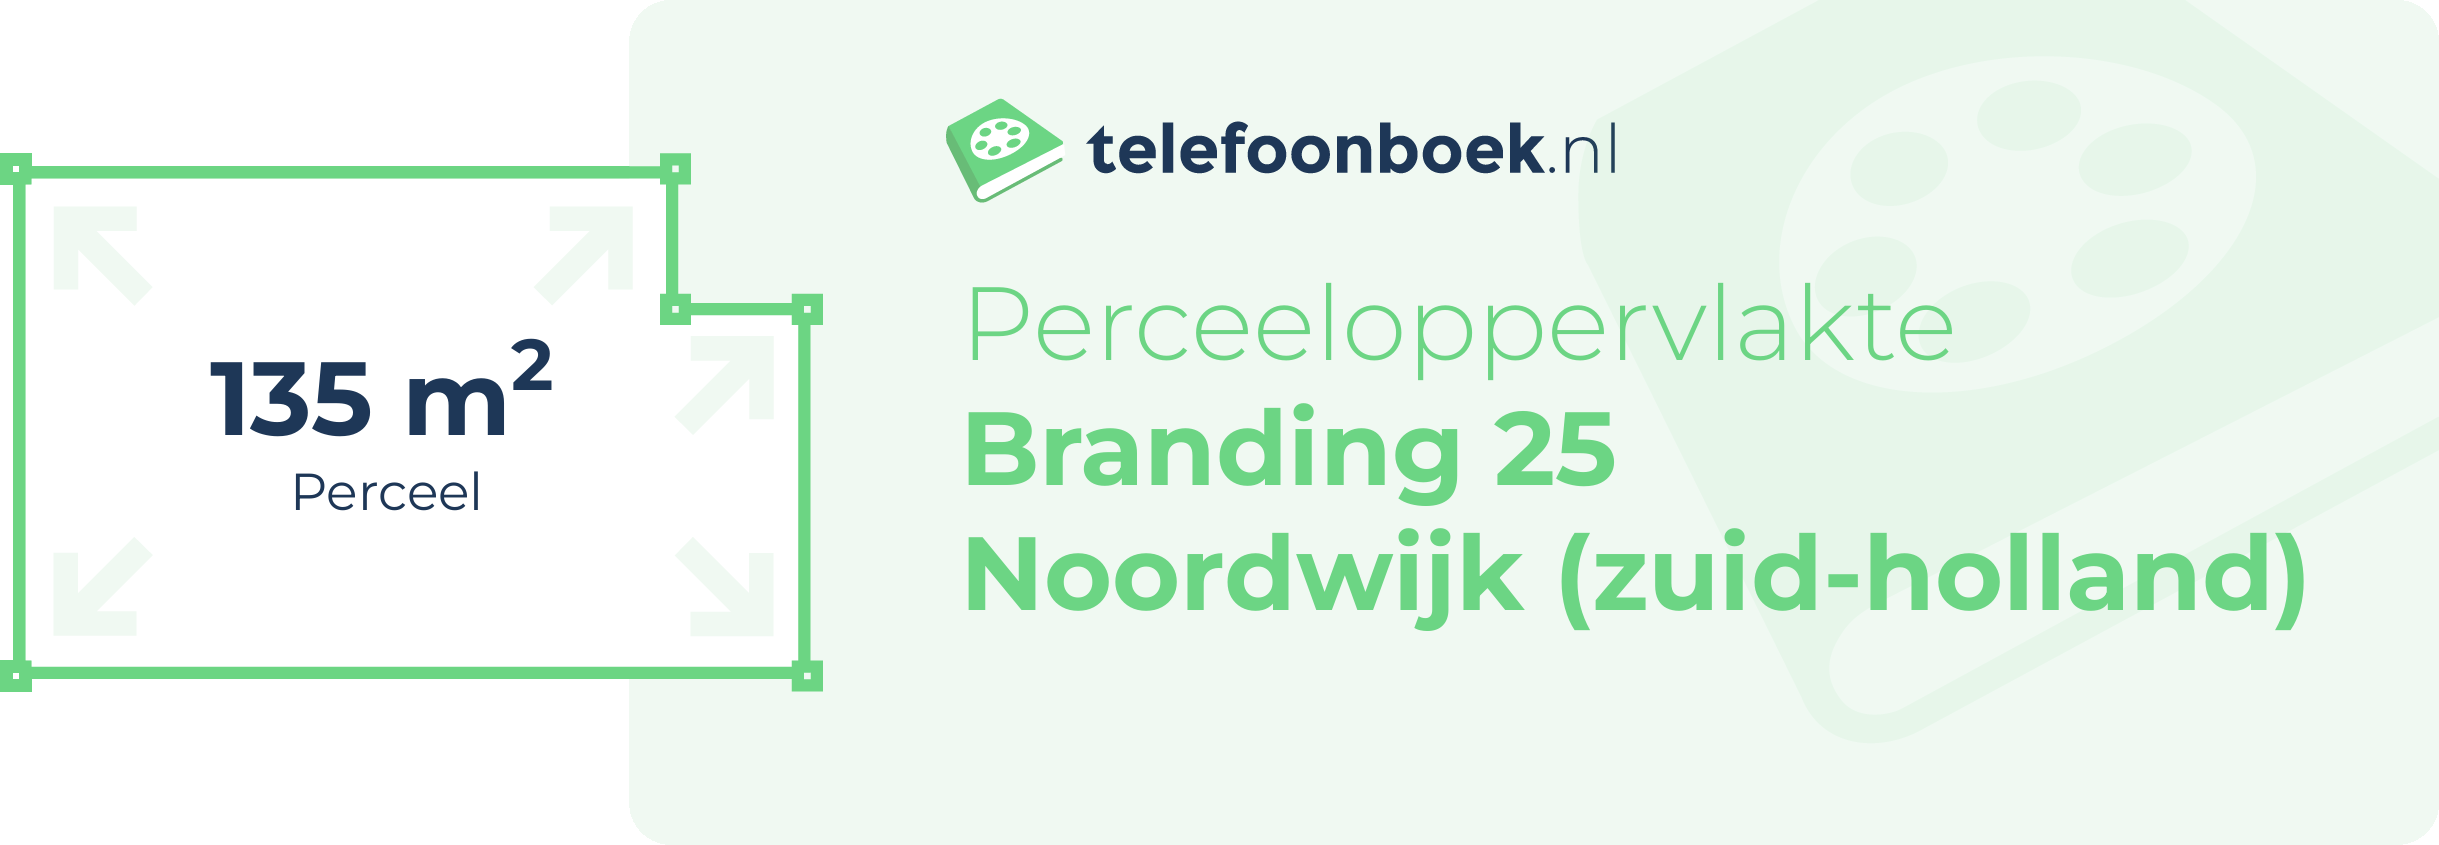 Perceeloppervlakte Branding 25 Noordwijk (Zuid-Holland)